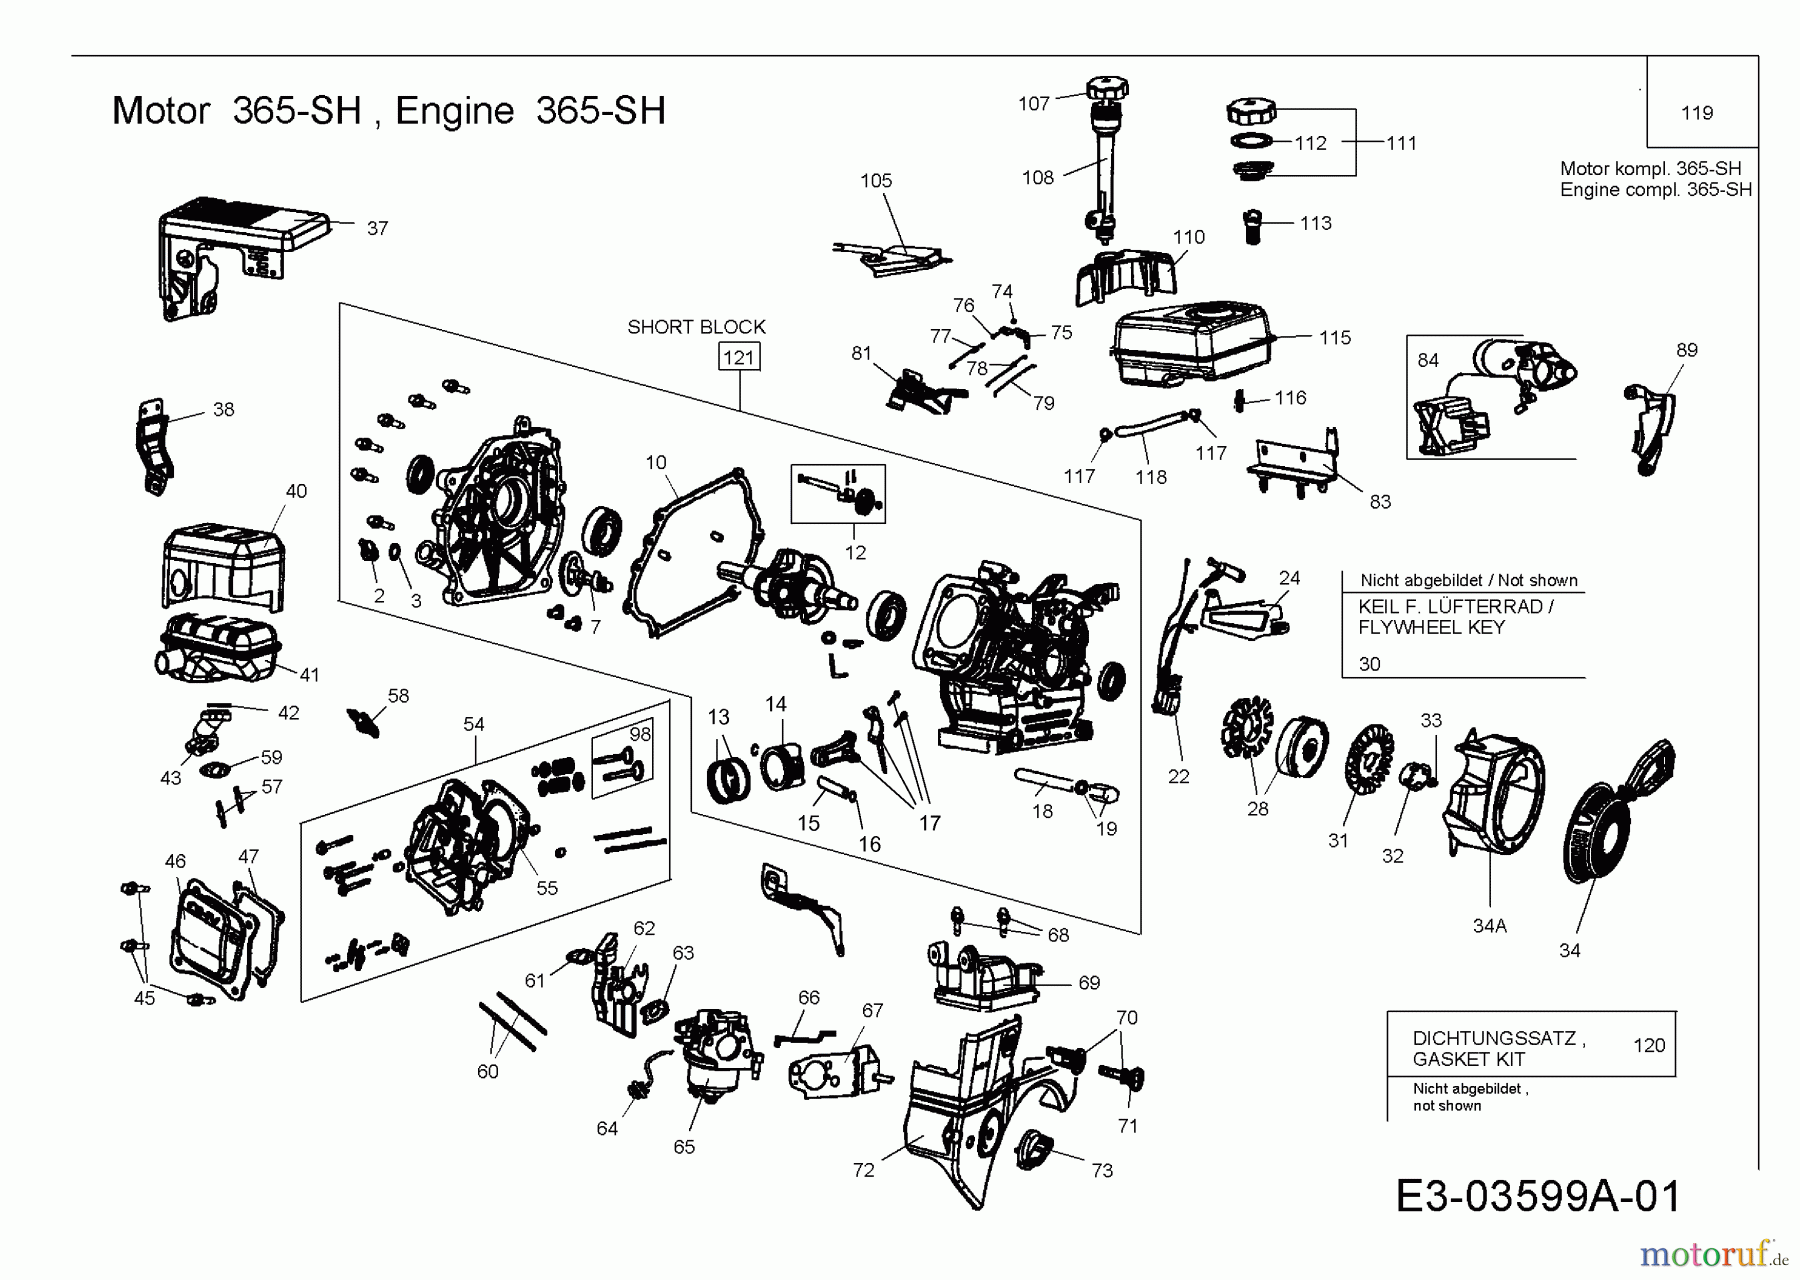  MTD-Engines Horizontal 365-SH 752Z365-SH  (2008) Engine